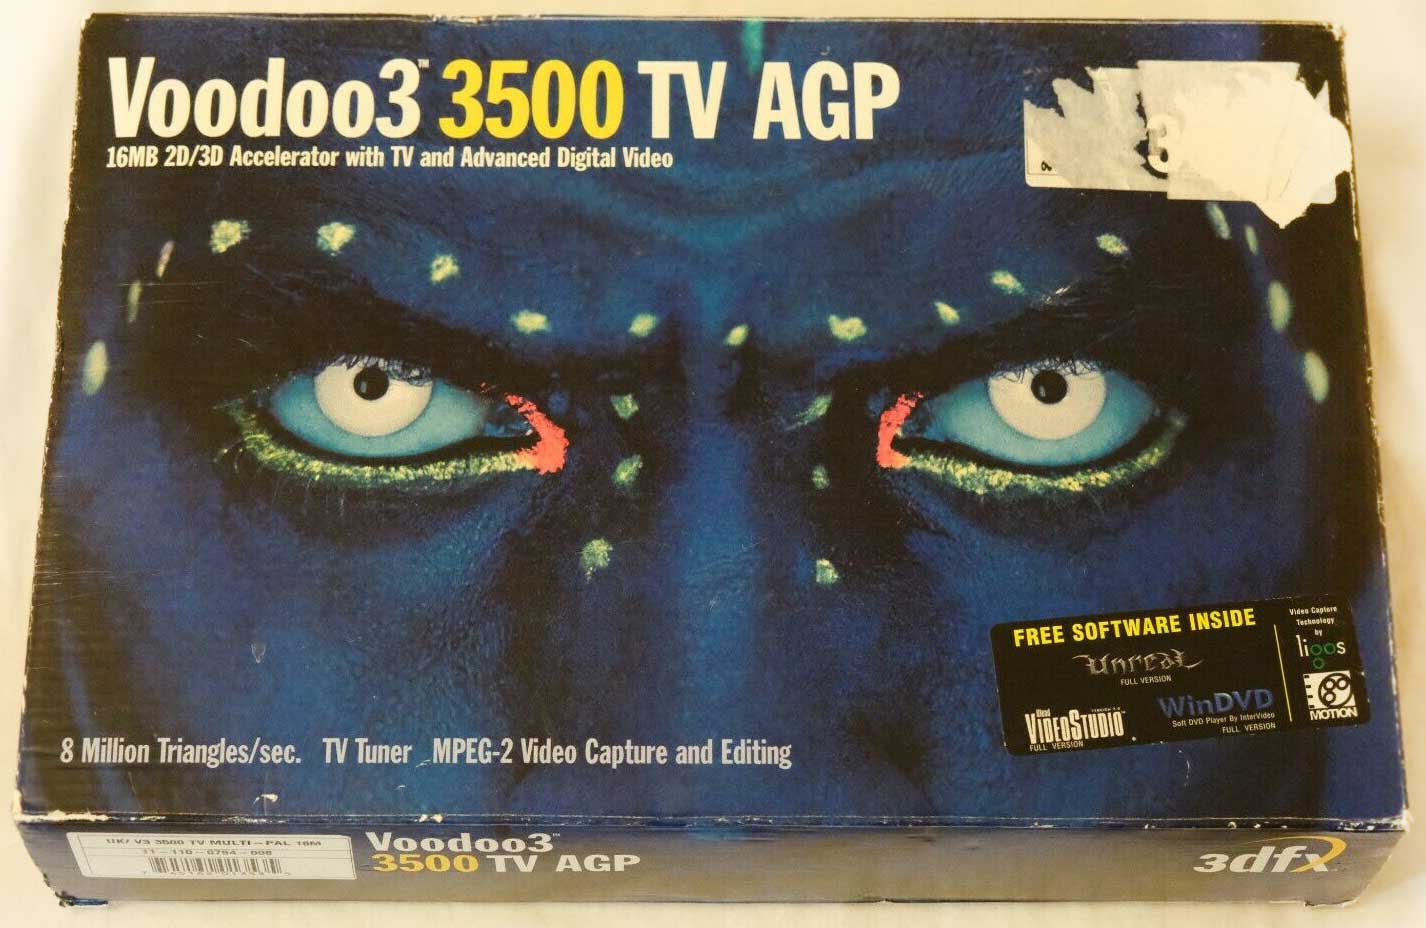 Voodoo 3 3500 TV AGP полное описание видеокарты и ТВ-тюнера